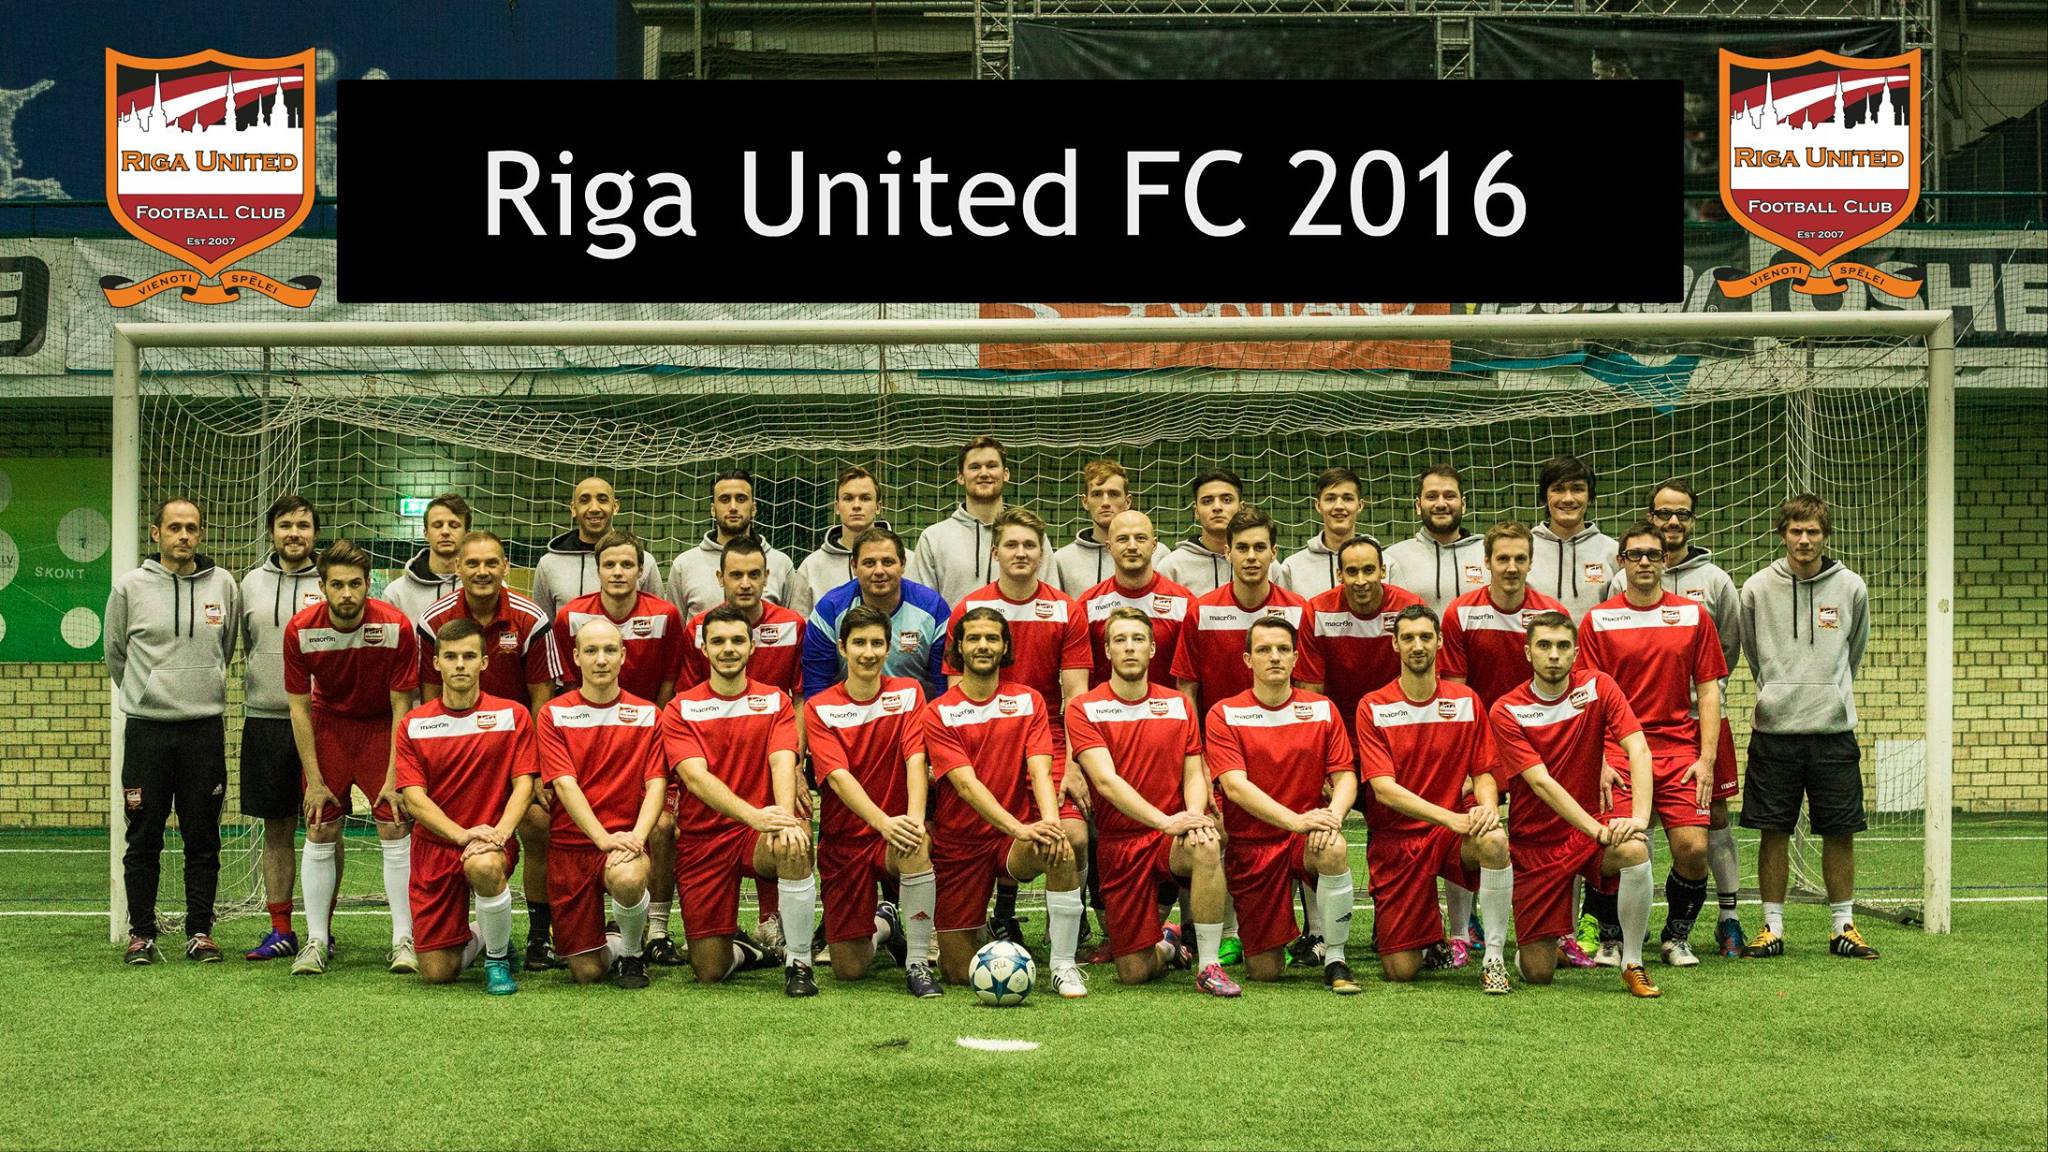 rufc men 2016 squad